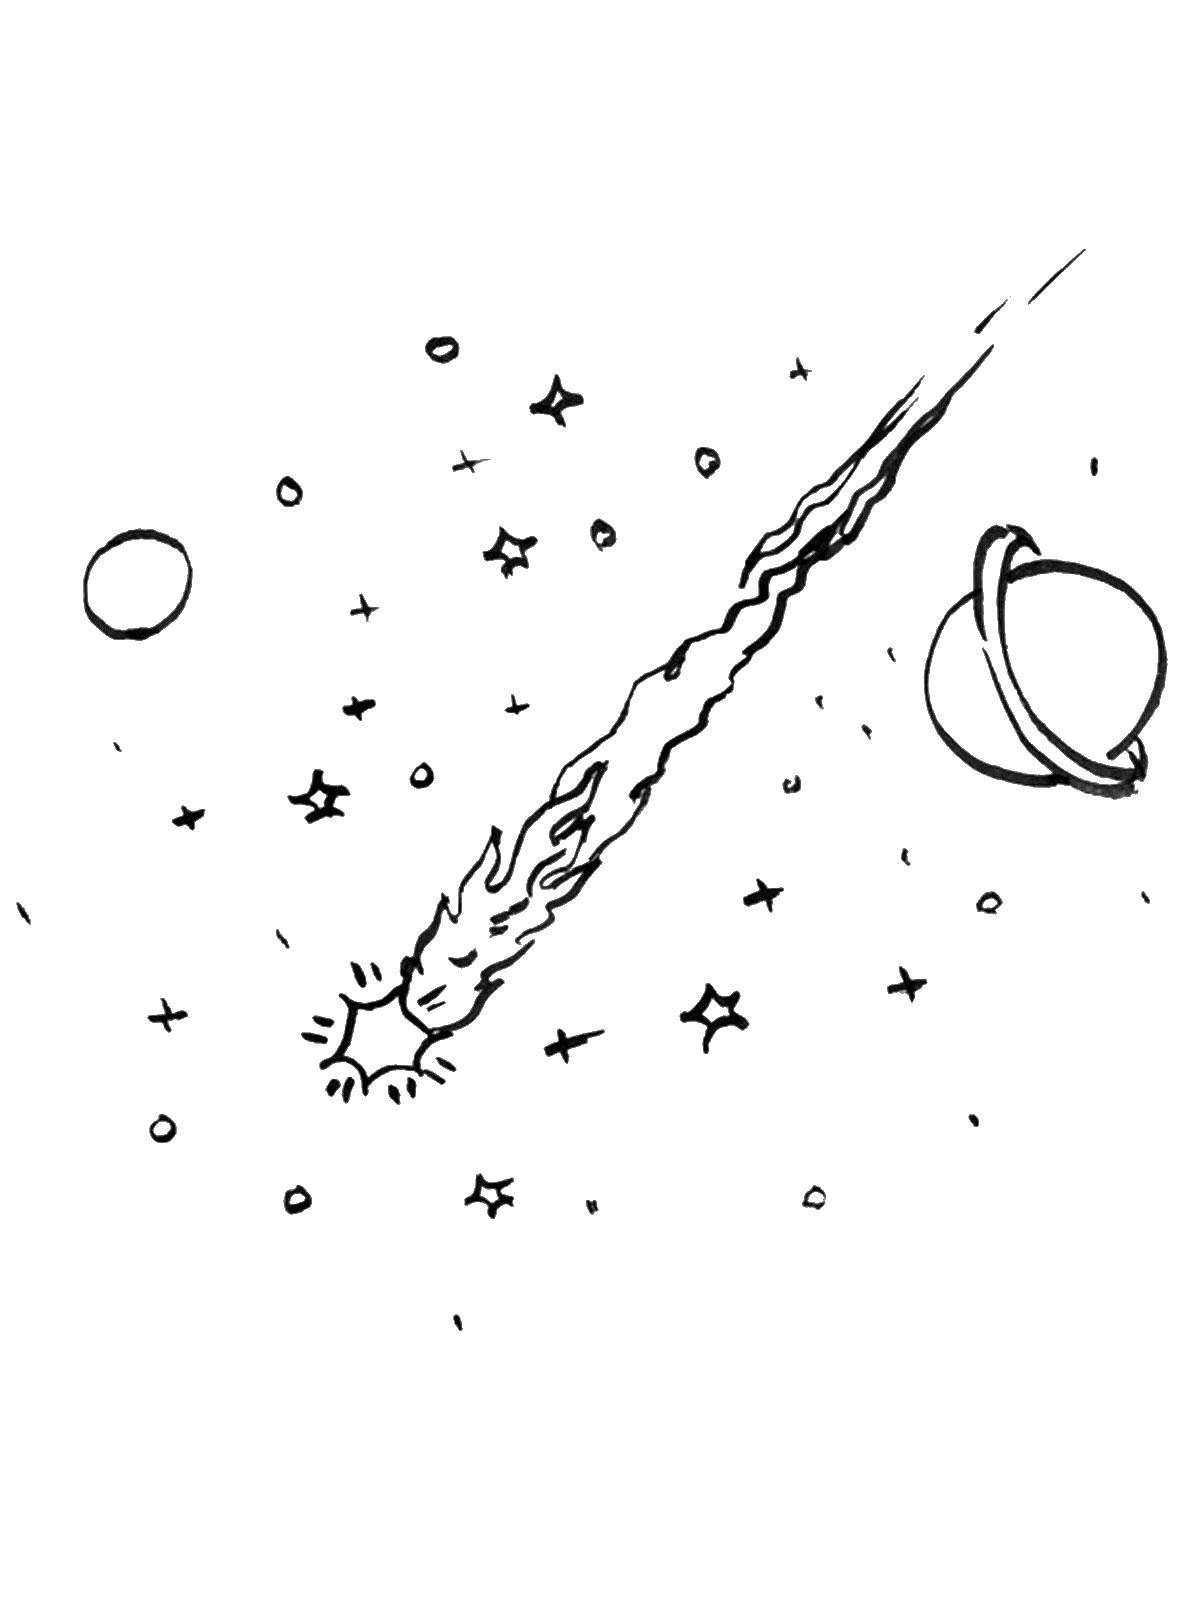 Название: Раскраска Кометы среди планет. Категория: День космонавтики. Теги: космос, звезды, планеты, комета.